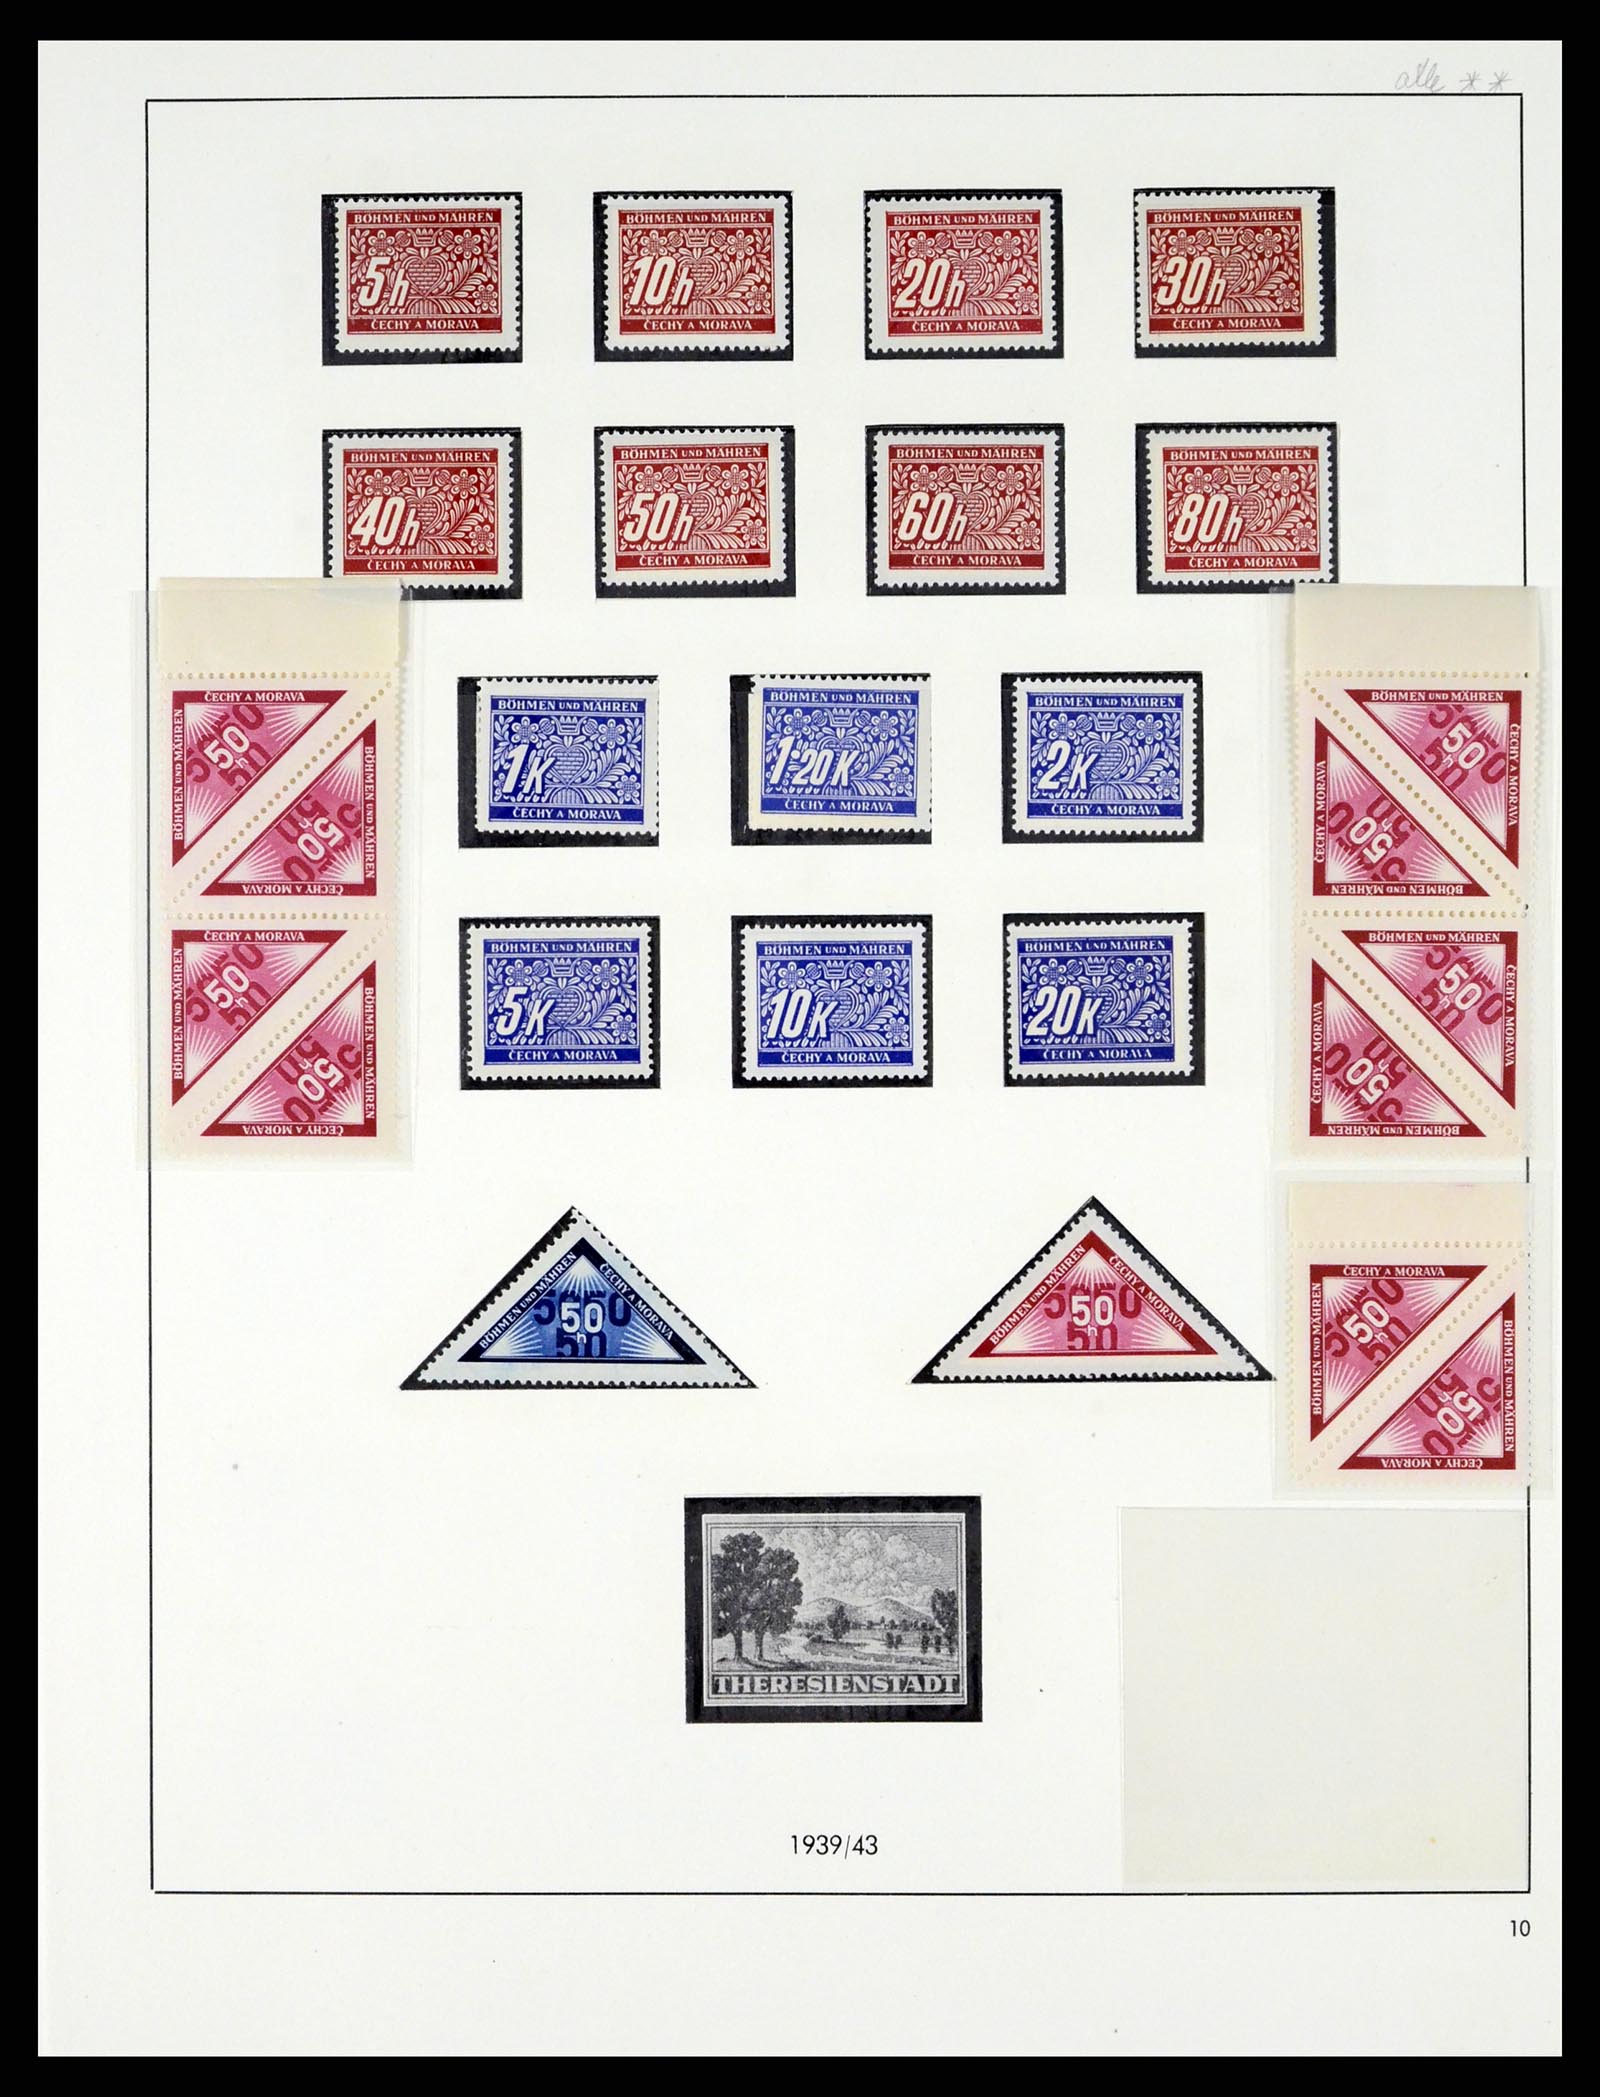 37535 037 - Postzegelverzameling 37535 Duitse bezetting 2e wereldoorlog 1939-1945